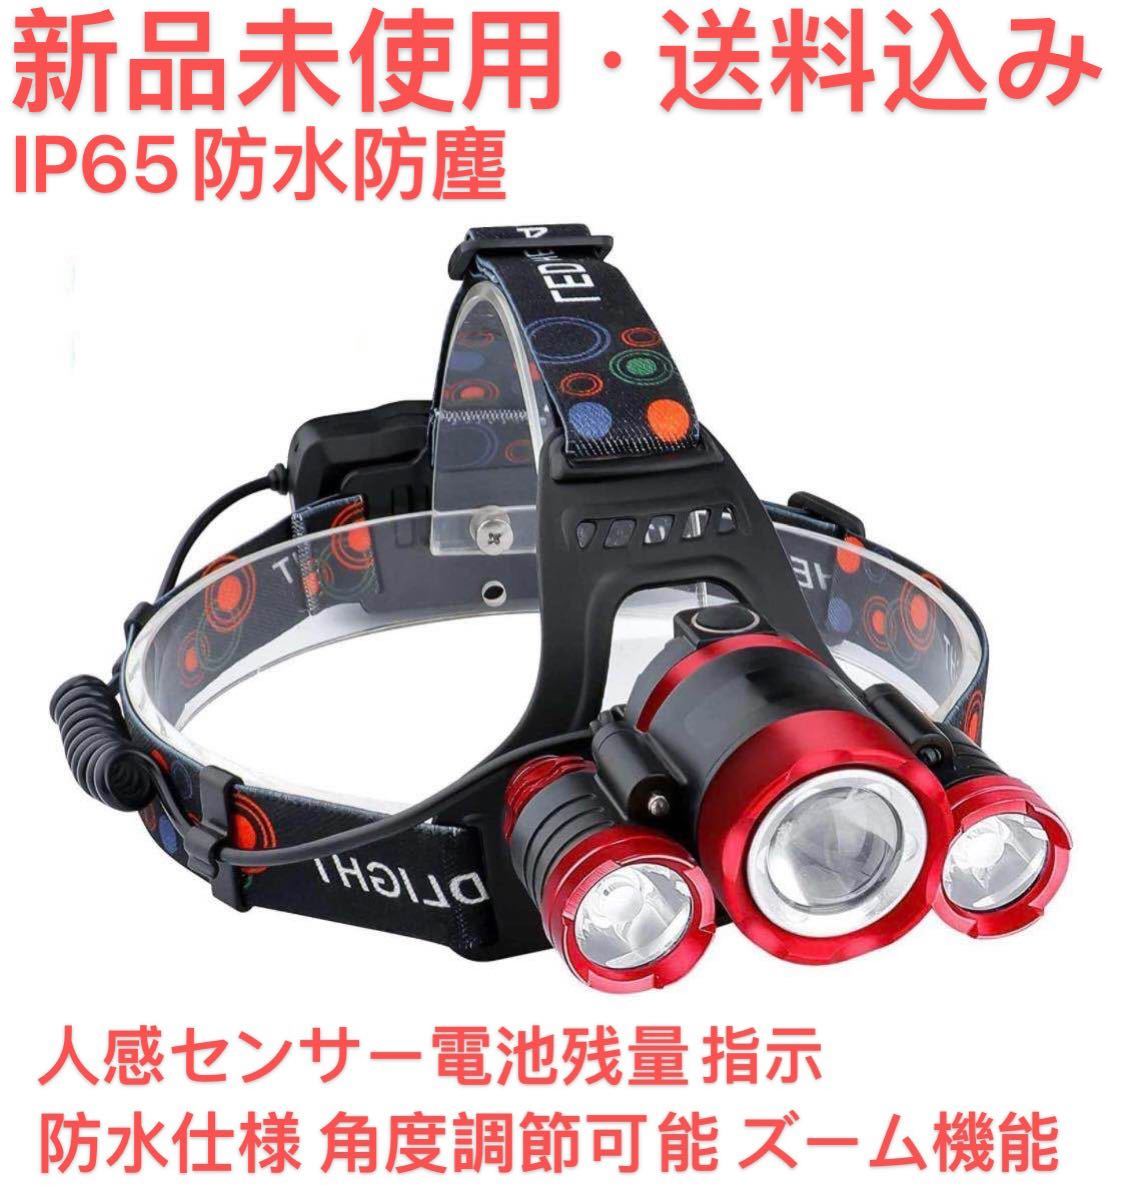 ヘッドライト usb充電式 高輝度 4点灯モード  人感センサー電池残量指示ランプ 防水仕様 角度調節可能 ズーム機能